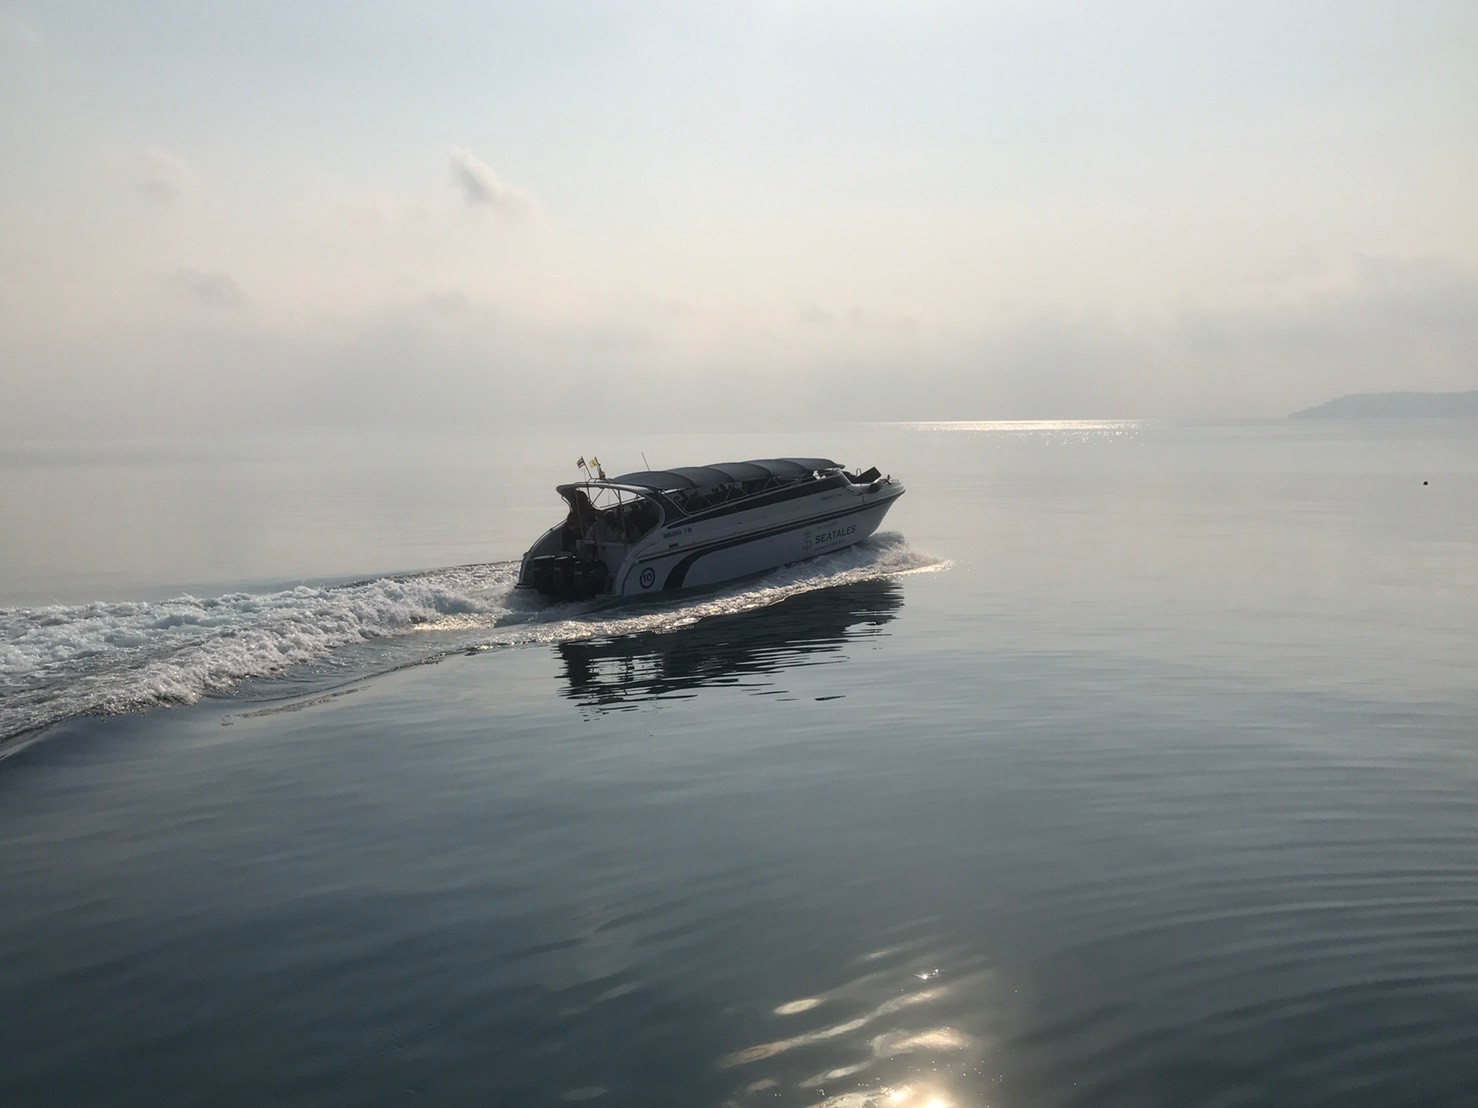 ซีเทลส์ สปีดโบท เกาะหมาก  ซีเทลส์ สปีดโบท เกาะหมาก (Seatale Speedboat Koh Mak)